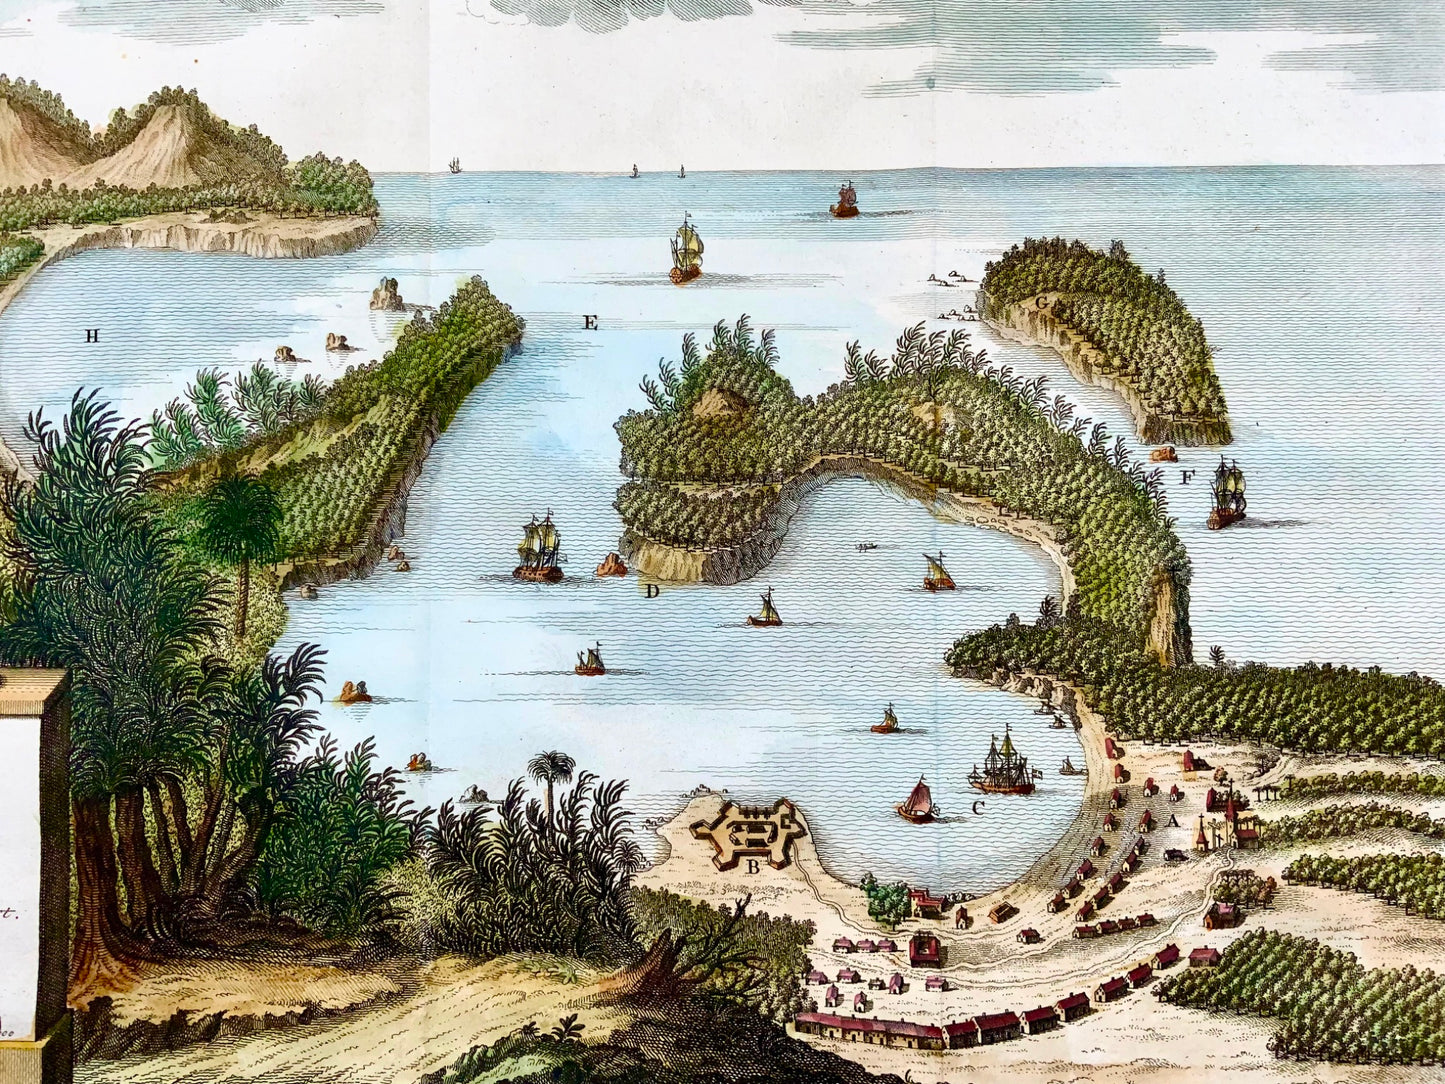 1757 Mappa panoramica della baia di Acapulco, Messico, colorata a mano, Schley